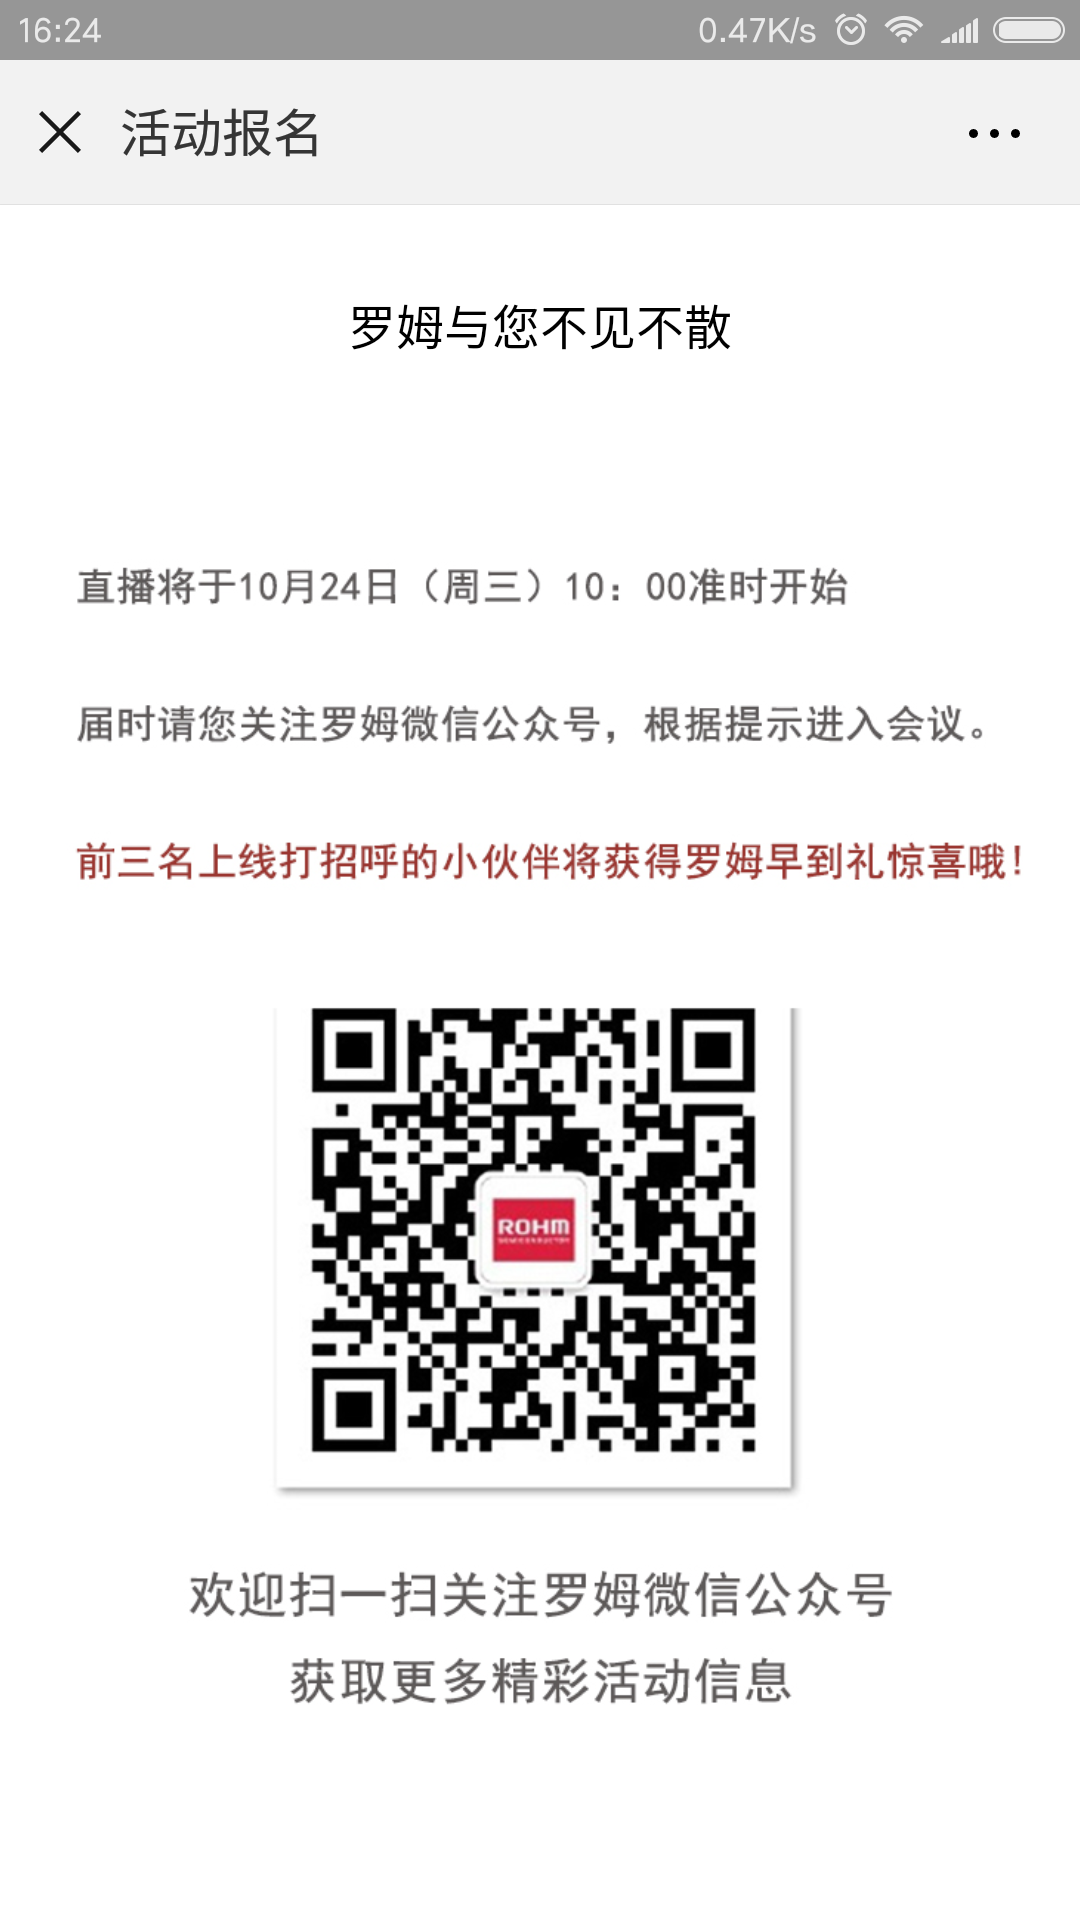 Screenshot_2018-09-26-16-24-12-911_com.tencent.mm.png